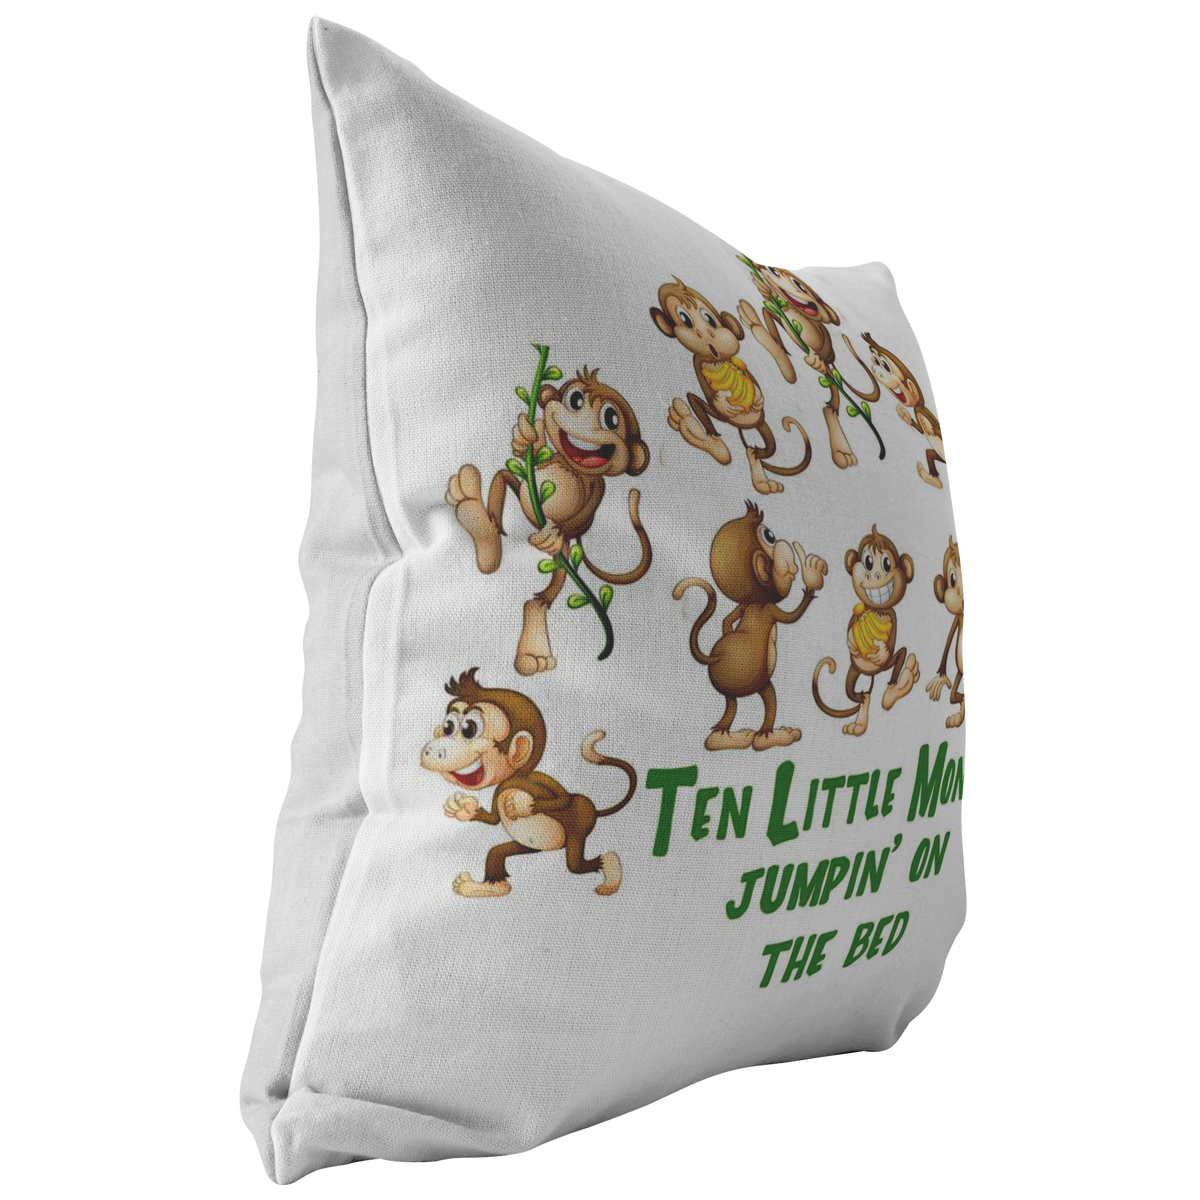 Ten Little Monkeys Home Decor Throw Pillow